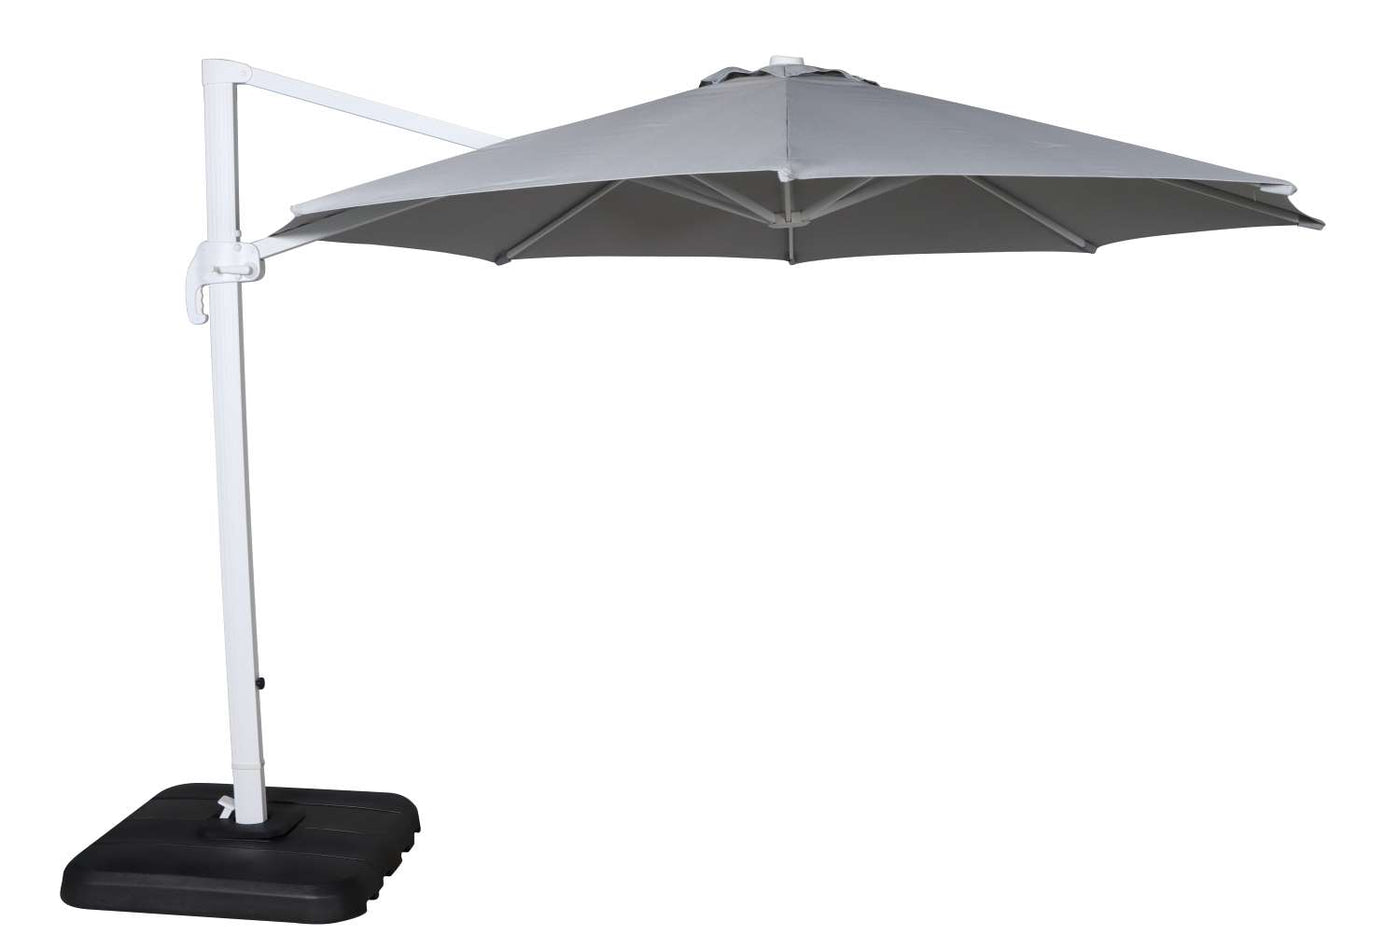 Sunrio Cantilever 11' Umbrella - Grey, White